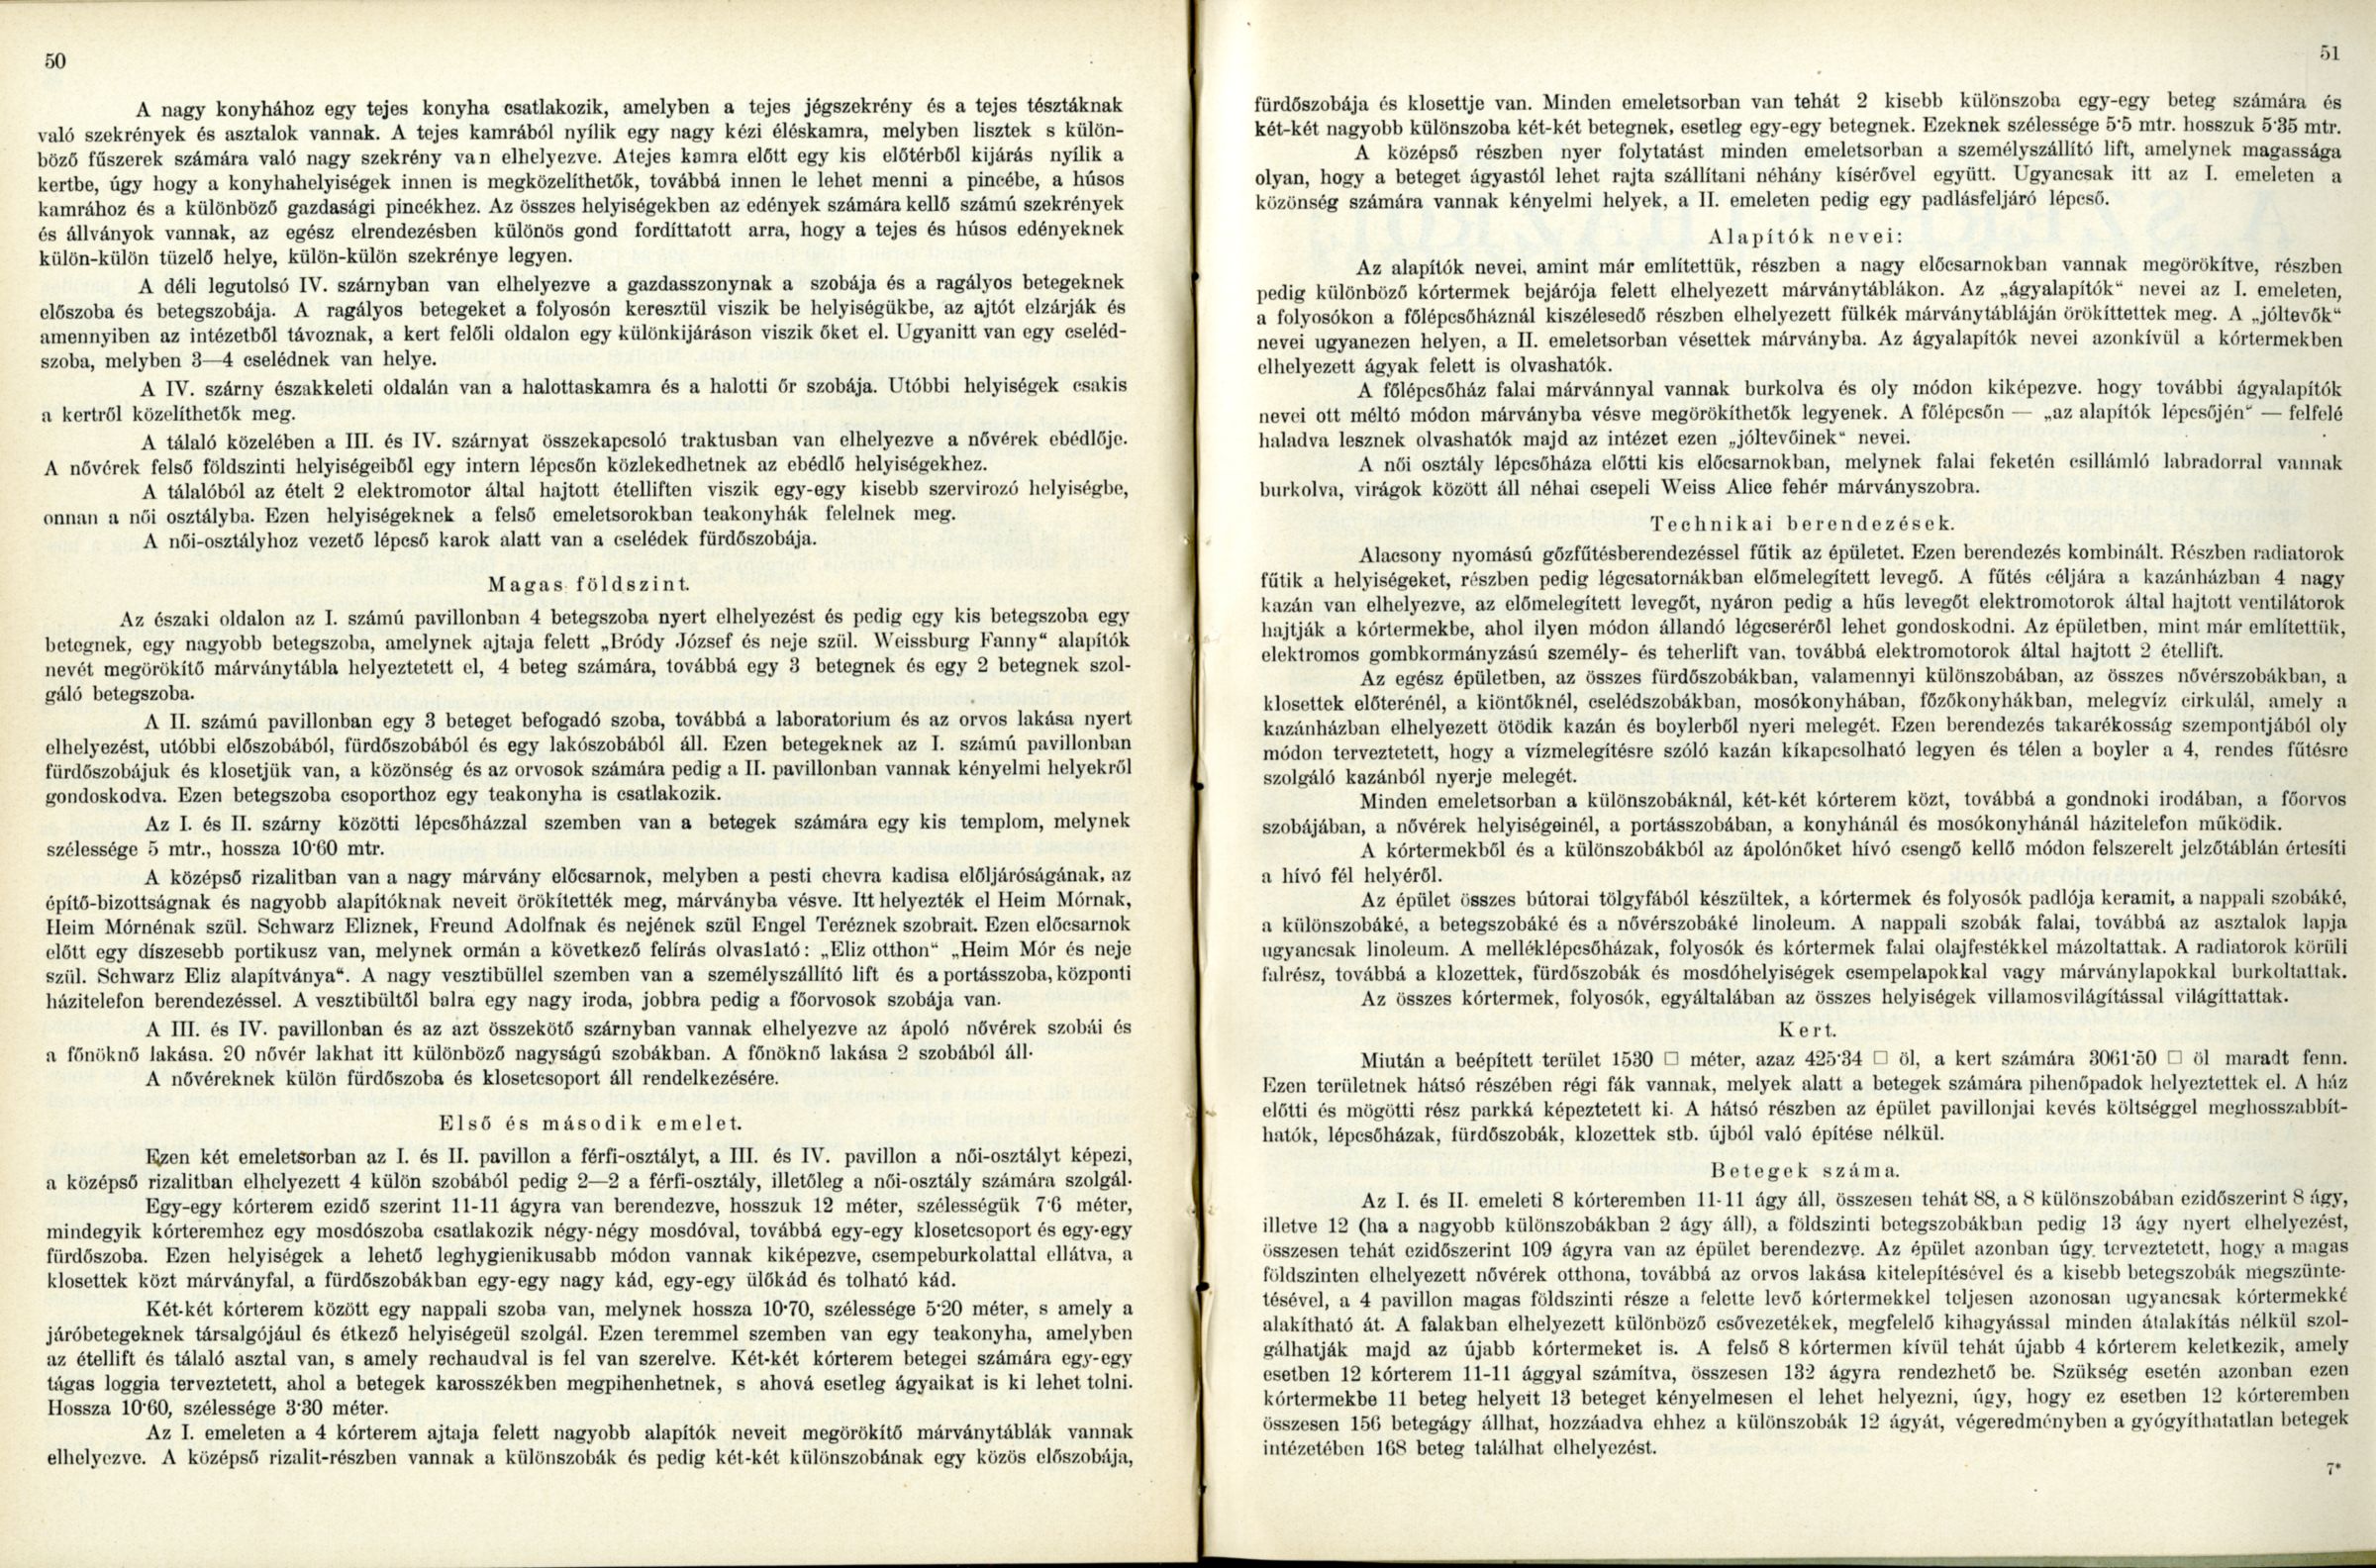 0035_A Pesti Chevra Kadisa elöljáróságának jelentése és kezelési kimutatása az 1910-iki közigazgatási évről. Budapest, 1911.